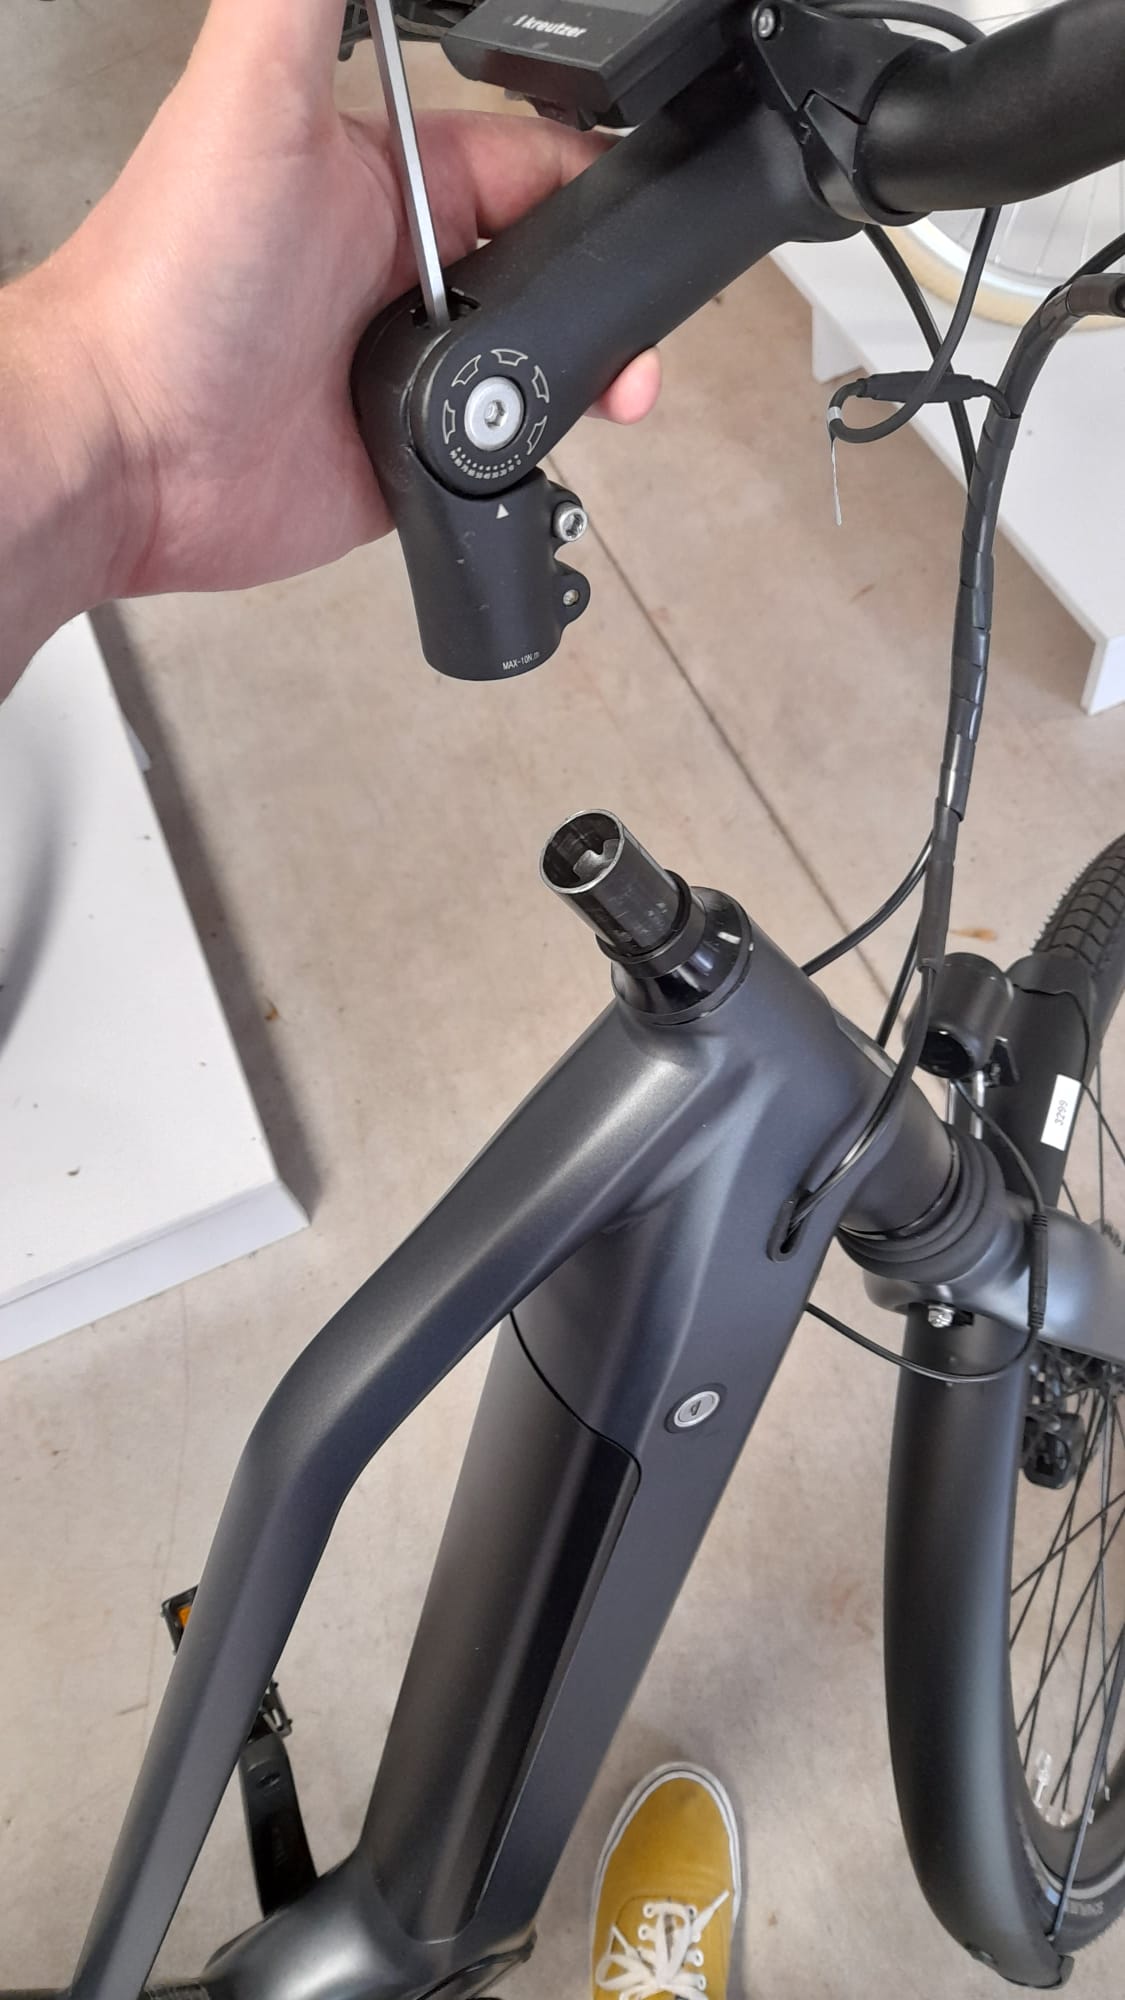 Opwekking oppervlakte Slaapkamer Fiets stuur verstellen - Verschillende fietssturen omhoog zetten